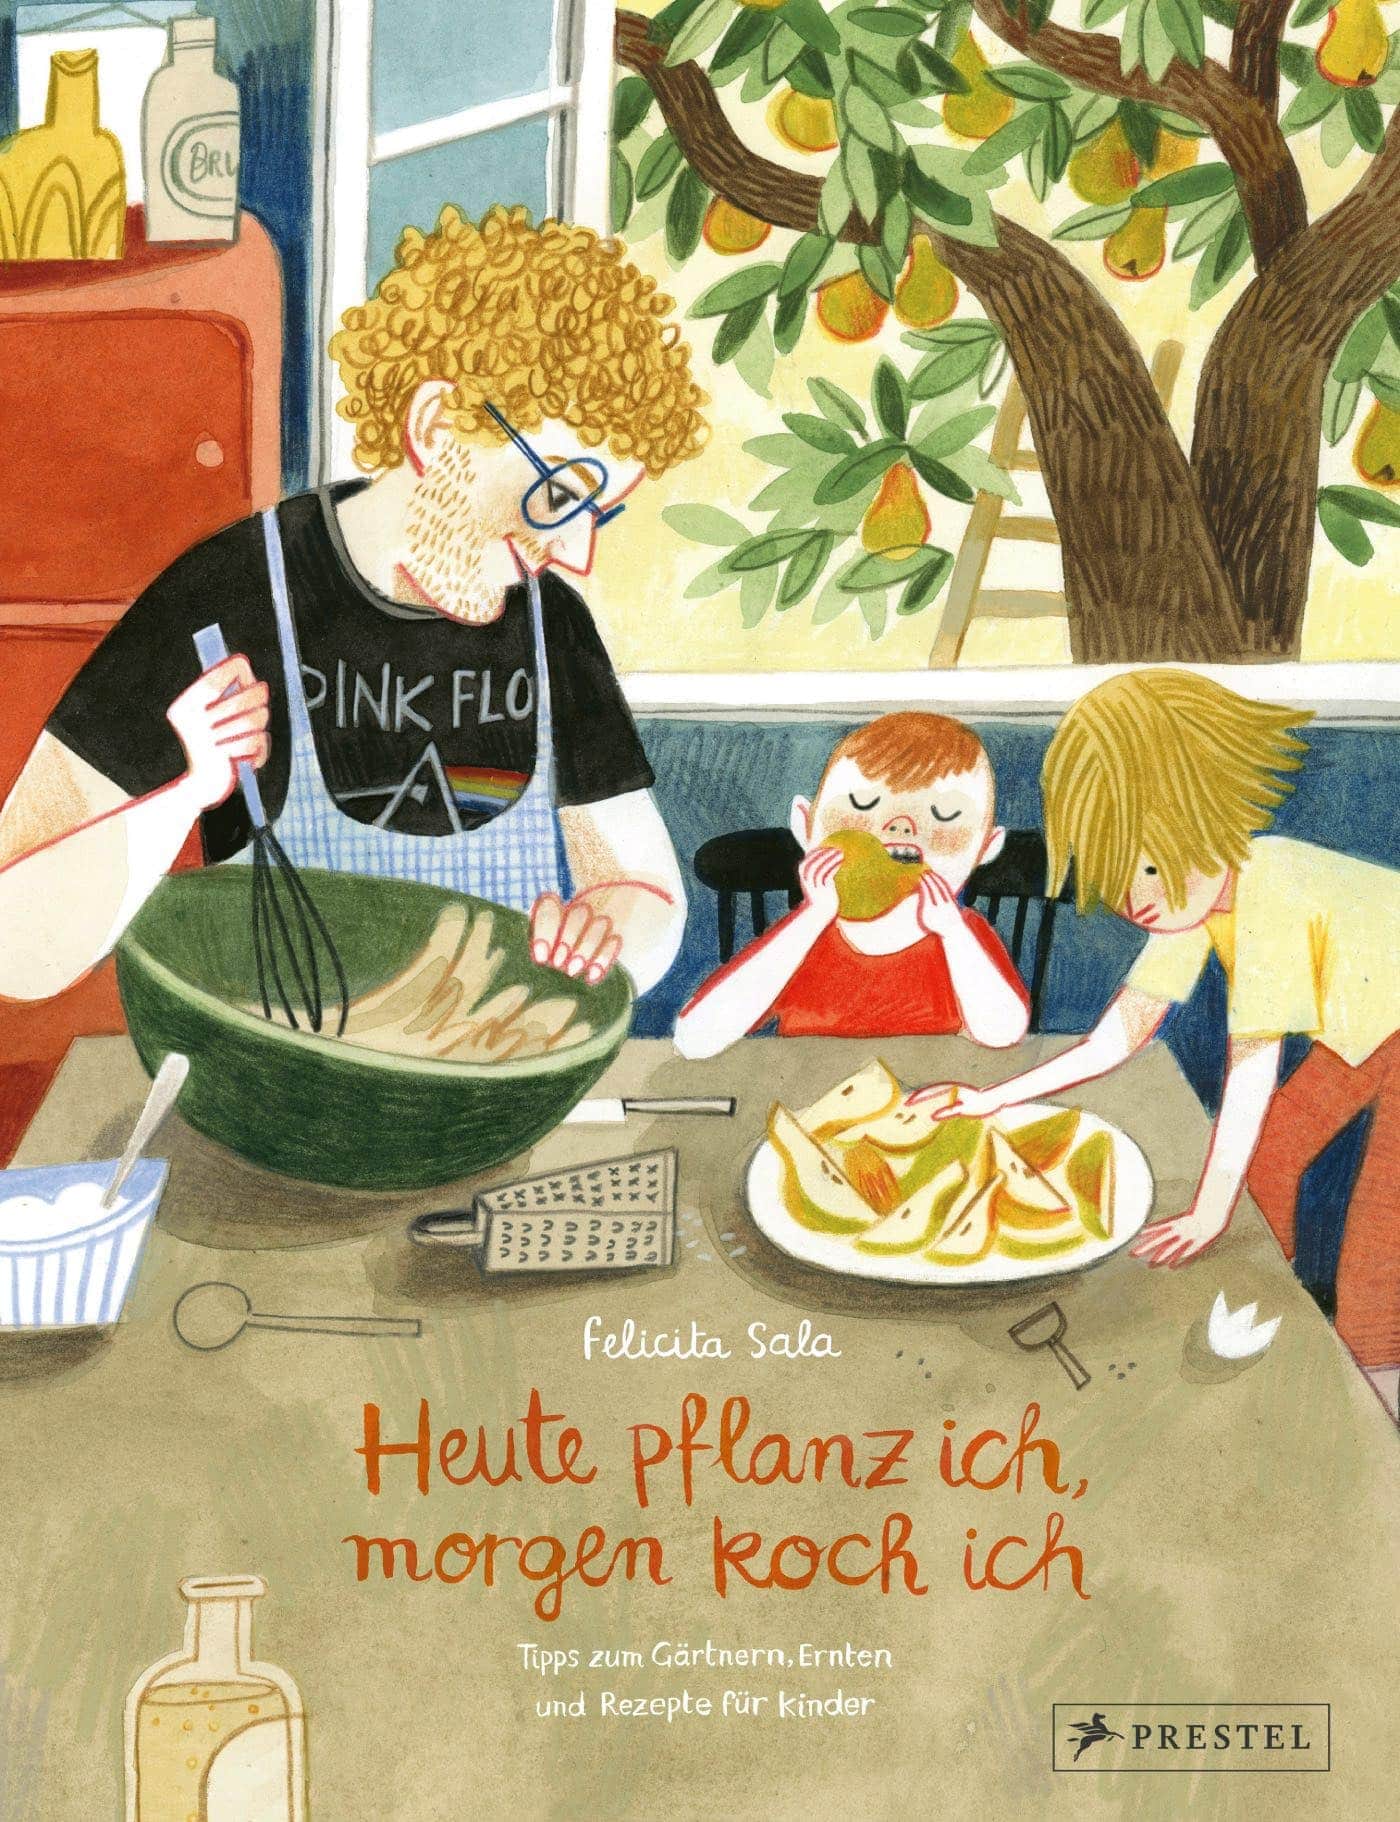 Kinderbuch-Tipp rund ums Gärtnern und Natur erleben mit Kindern: Huet pflanz ich, morgen koch ich ... // HIMBEER